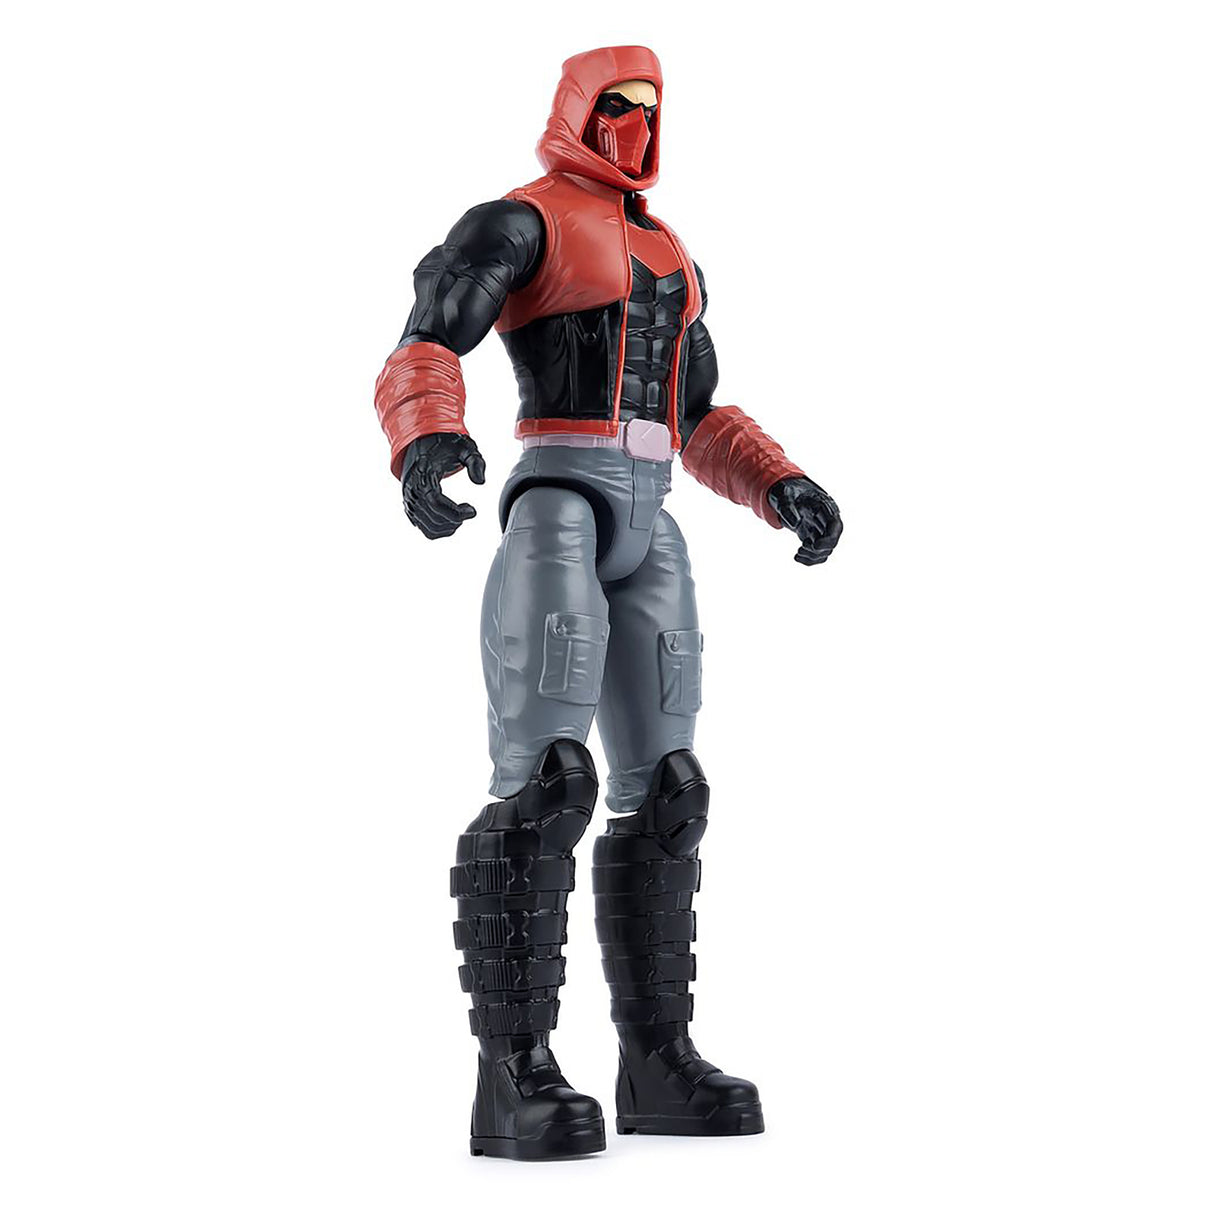 DC Batman Figurine - Hood Figure (12 inches)